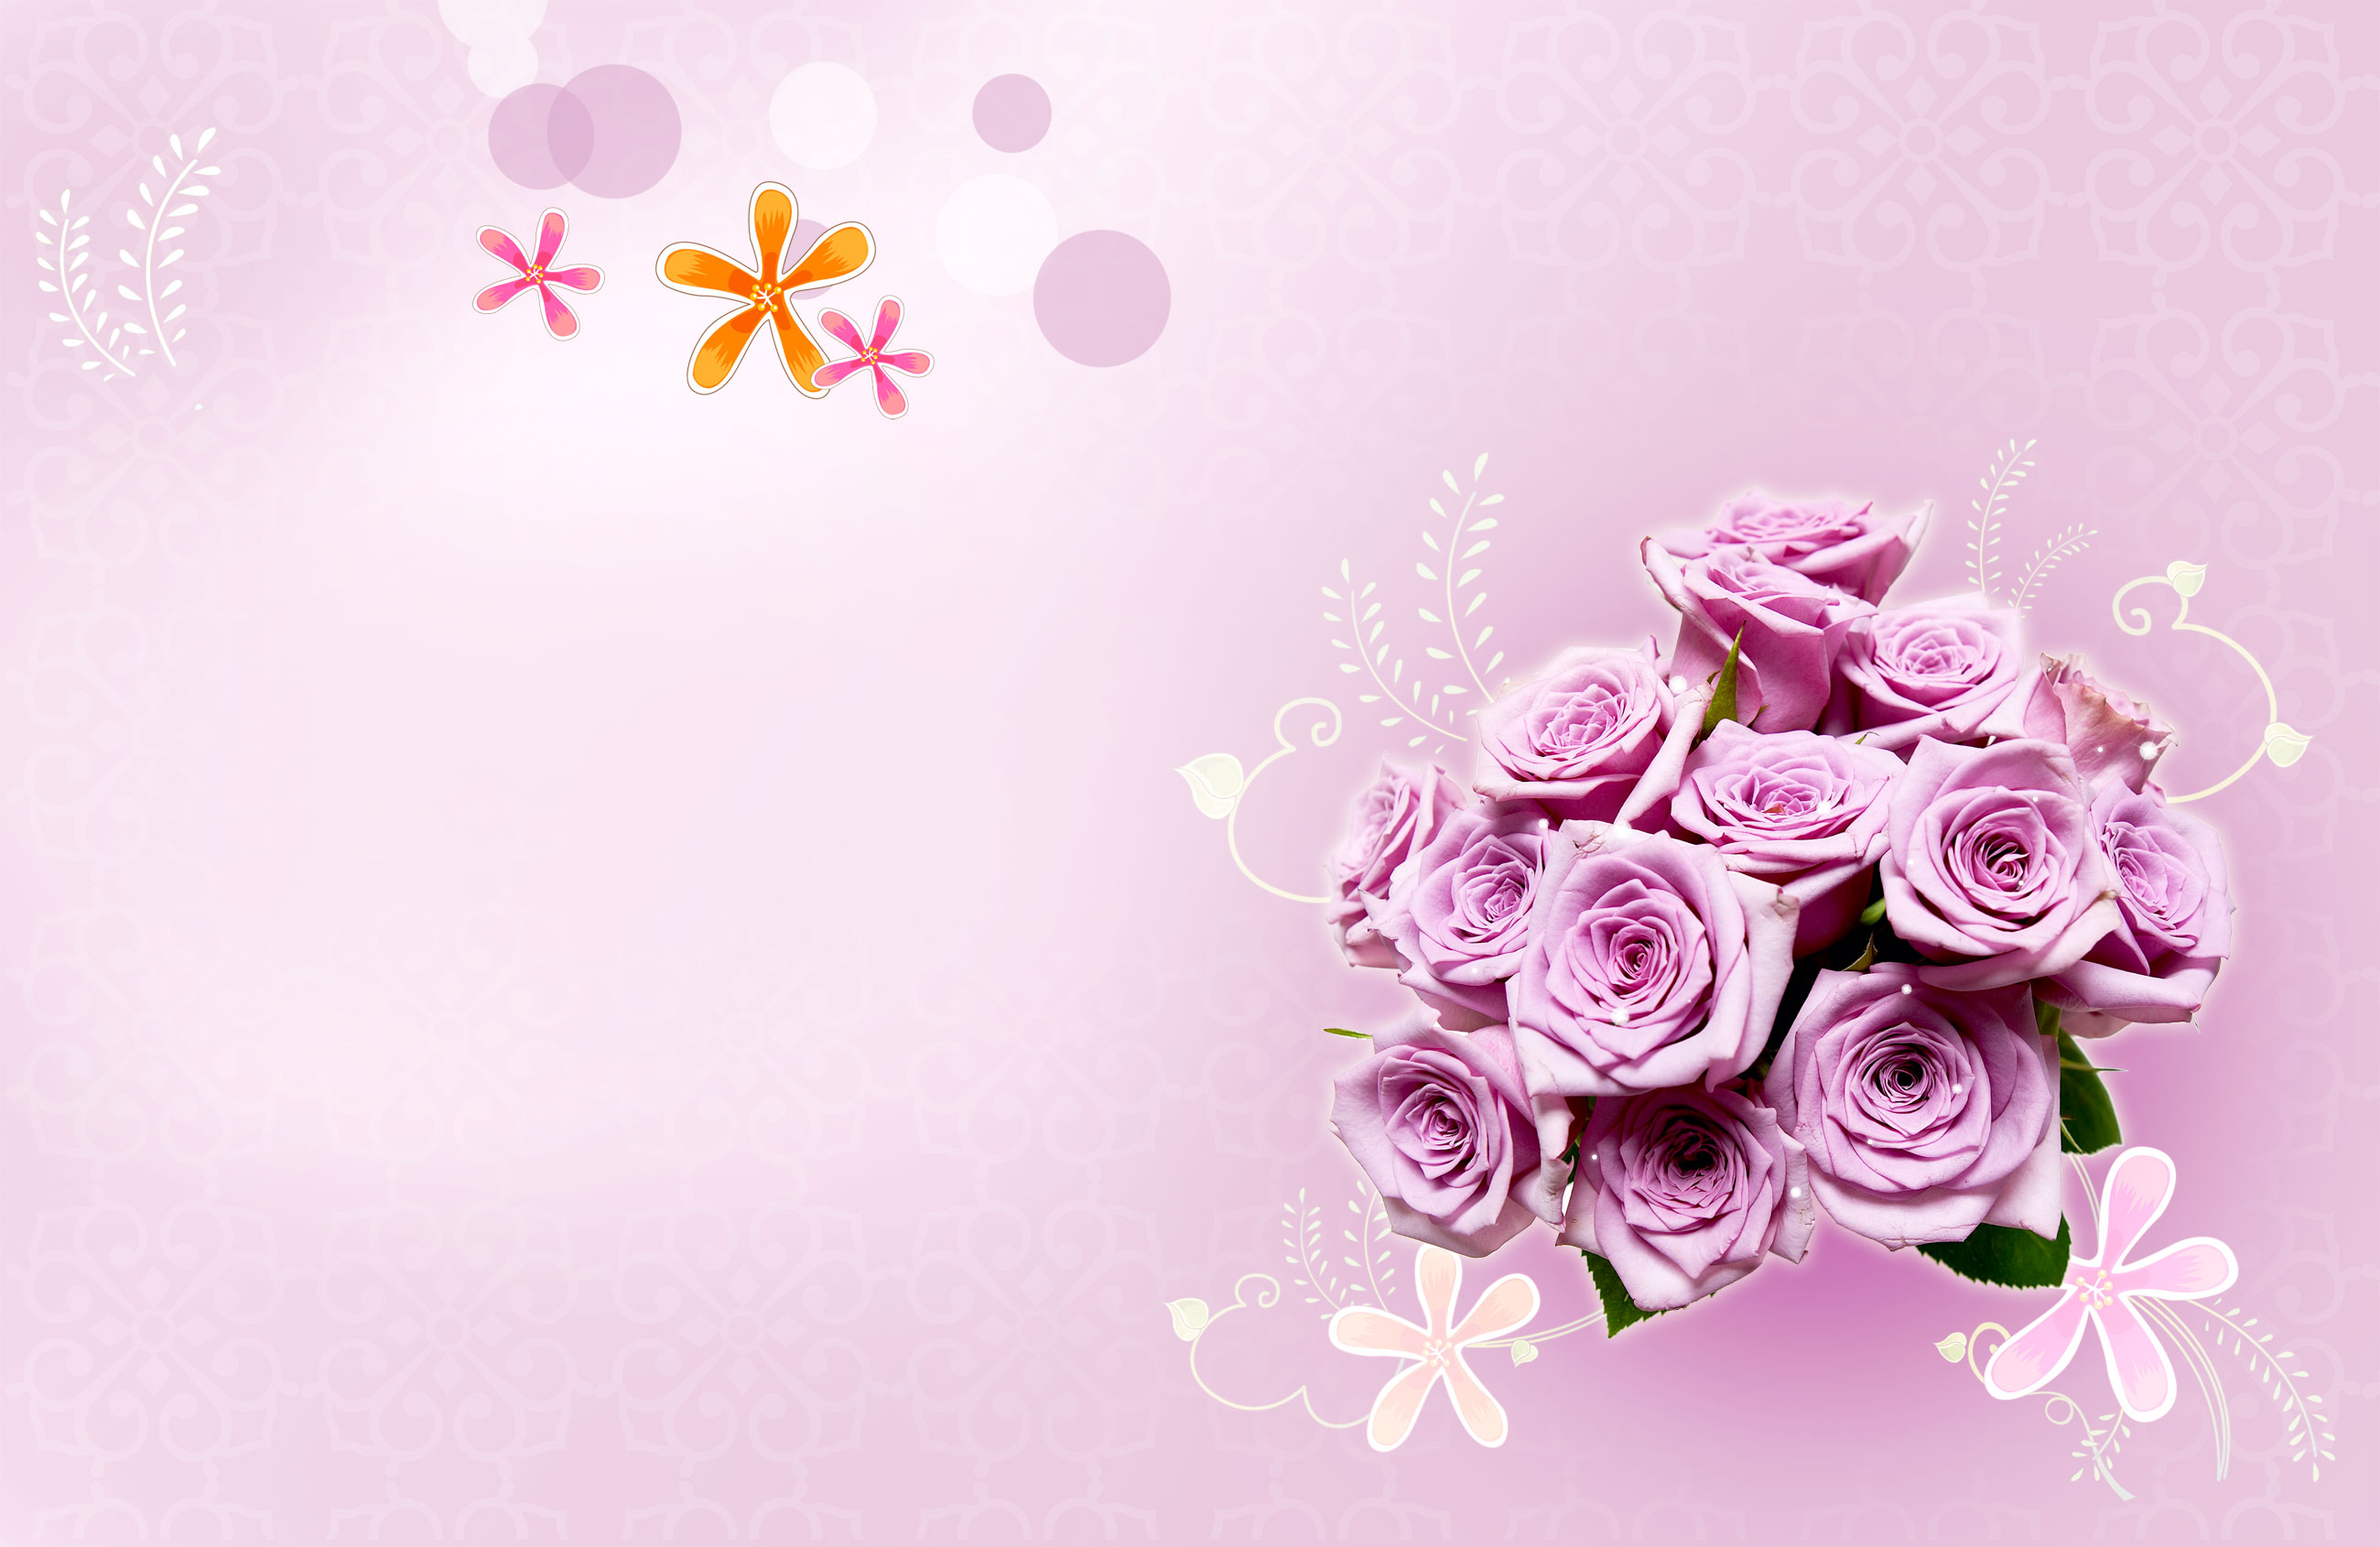 紫色の花のイラスト フリー素材 背景 壁紙no 505 紫のバラ 束